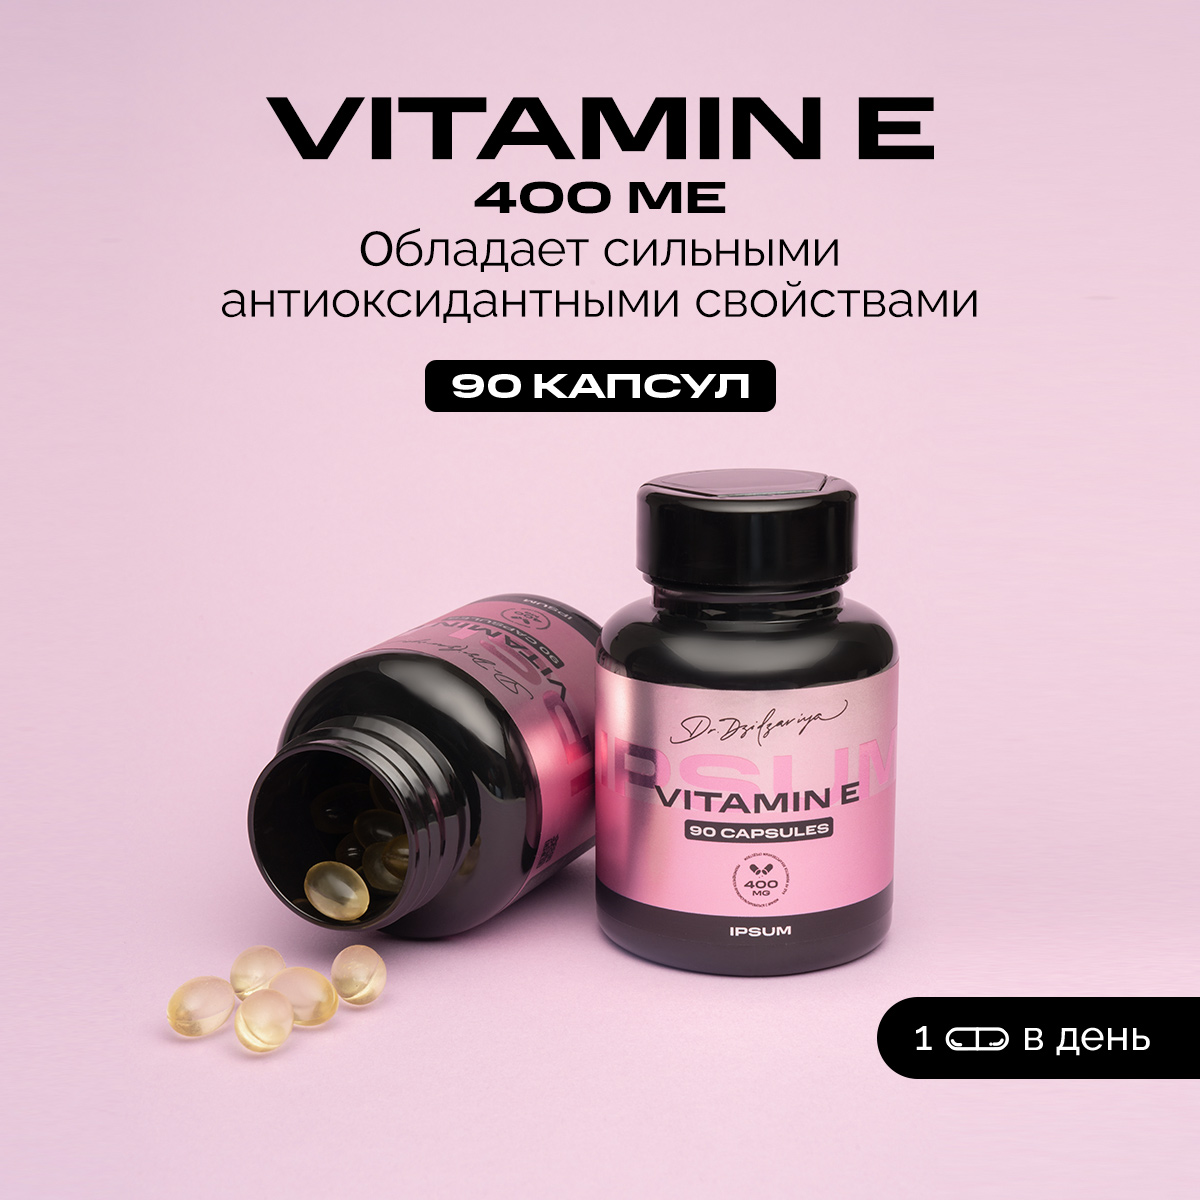 Витамин Е, Ipsum Vitamin 400 МЕ токоферол ацетат для укрепление иммунитета, 60 капсул